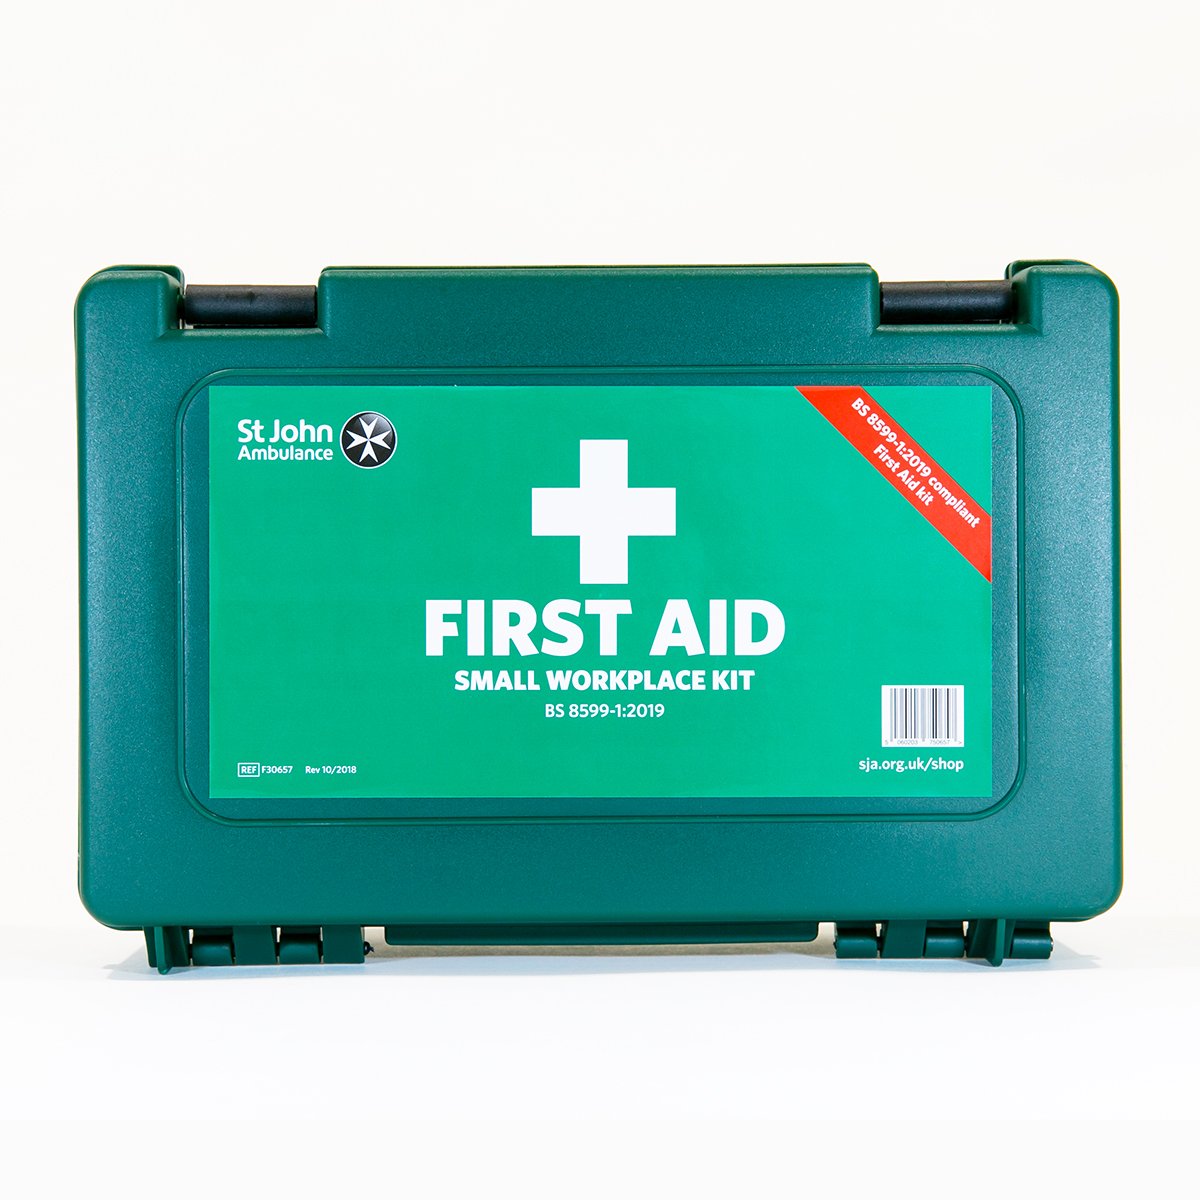 St John Ambulance Small Standard Workplace First Aid Kit BS 8599-1:2019